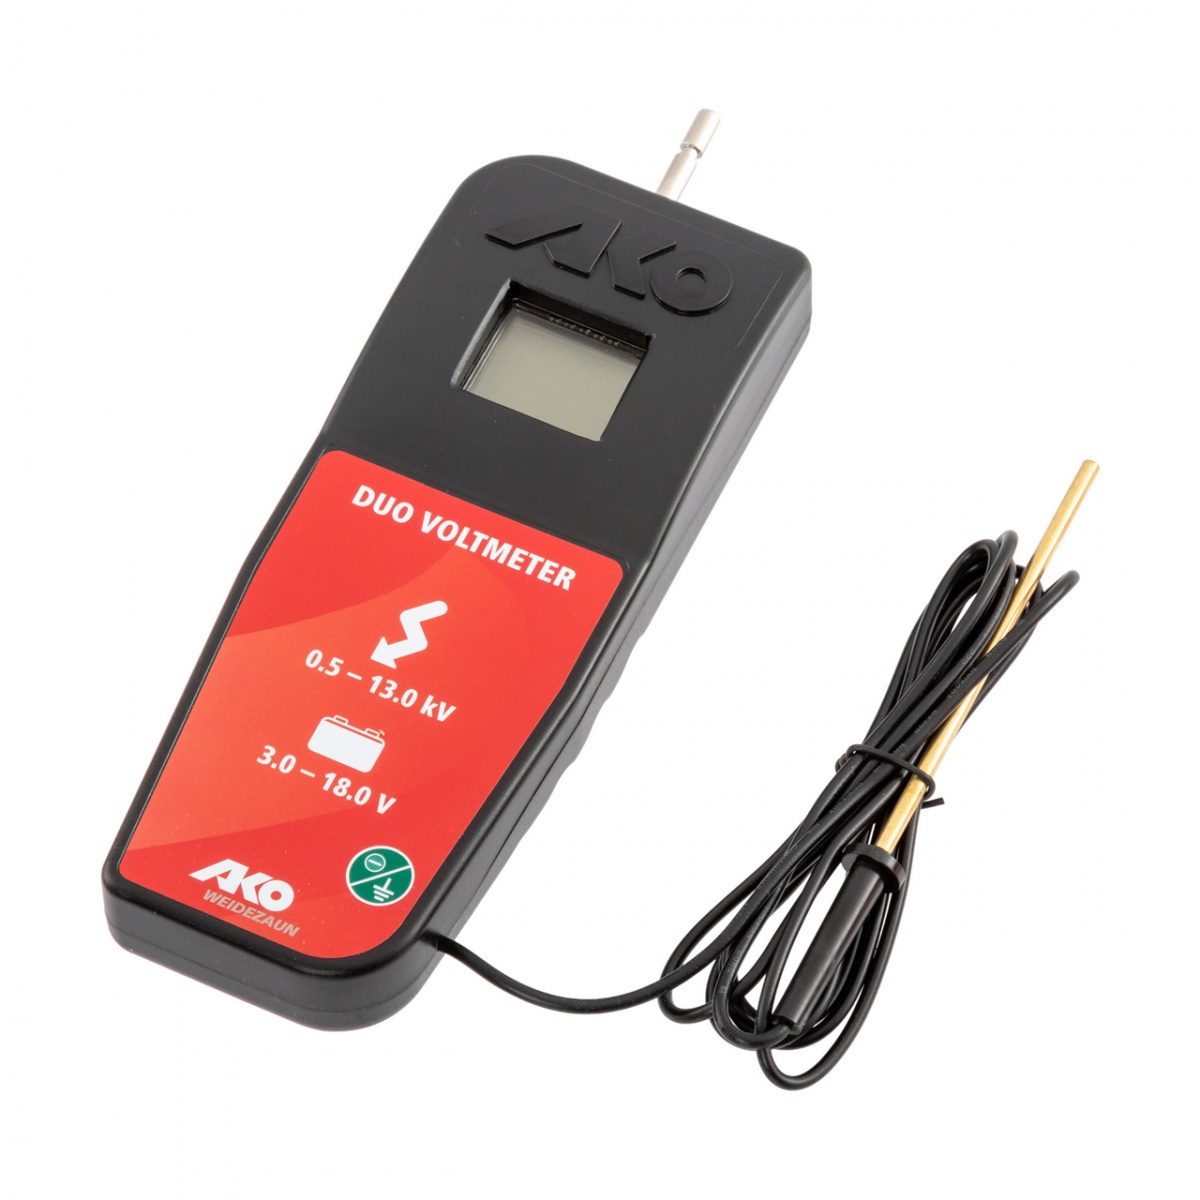 Tester digital pentru garduri electrice, acumulatori și baterii, 3-18 V, 500-13000 V